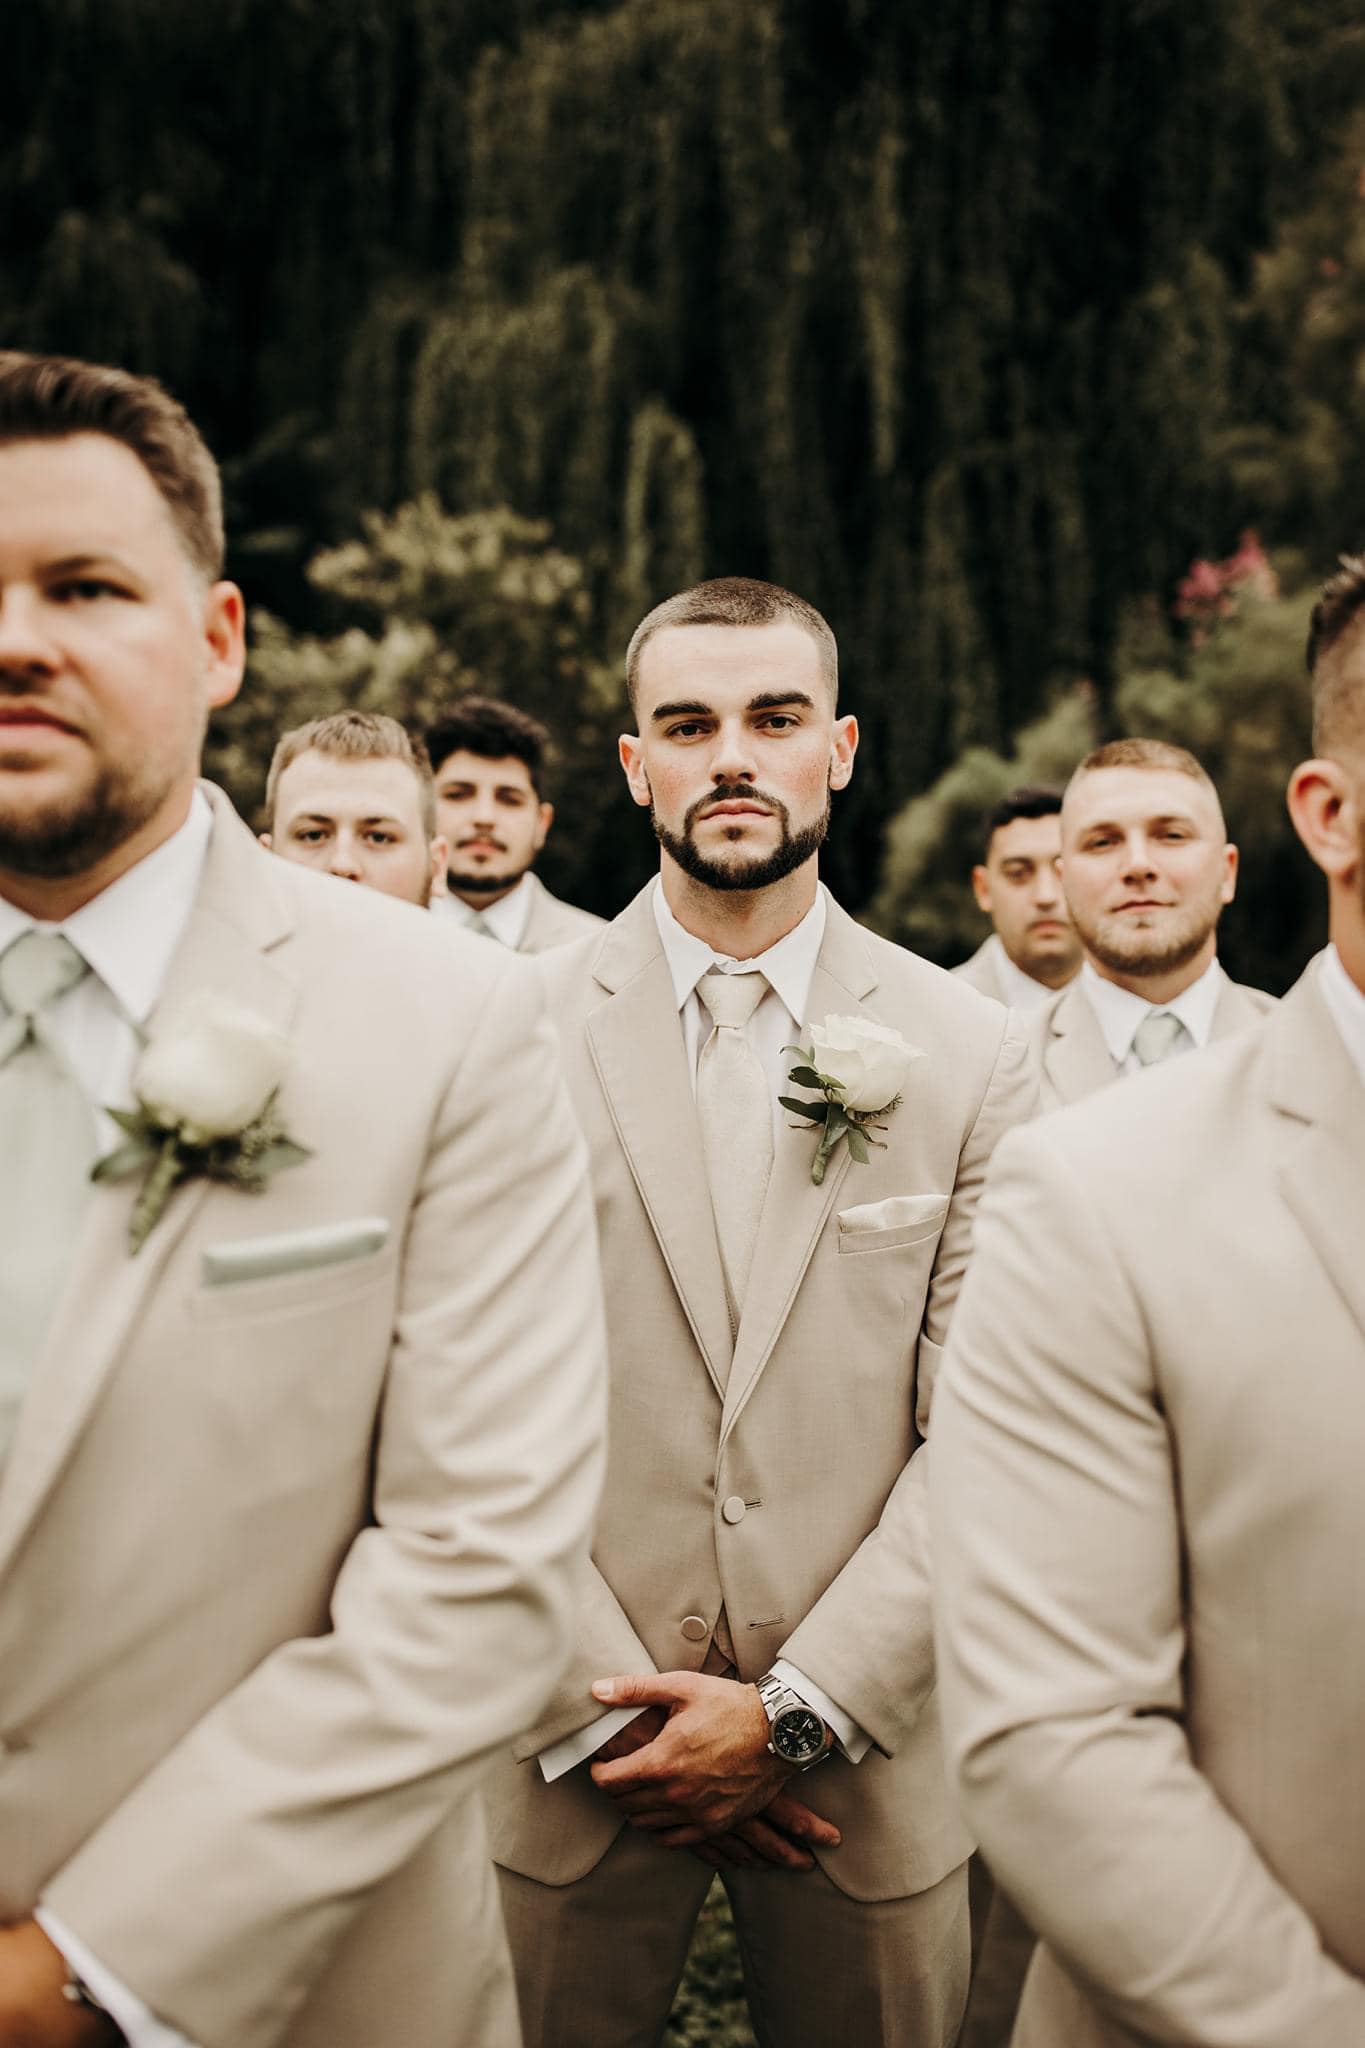 group of groomsmen wearing suits